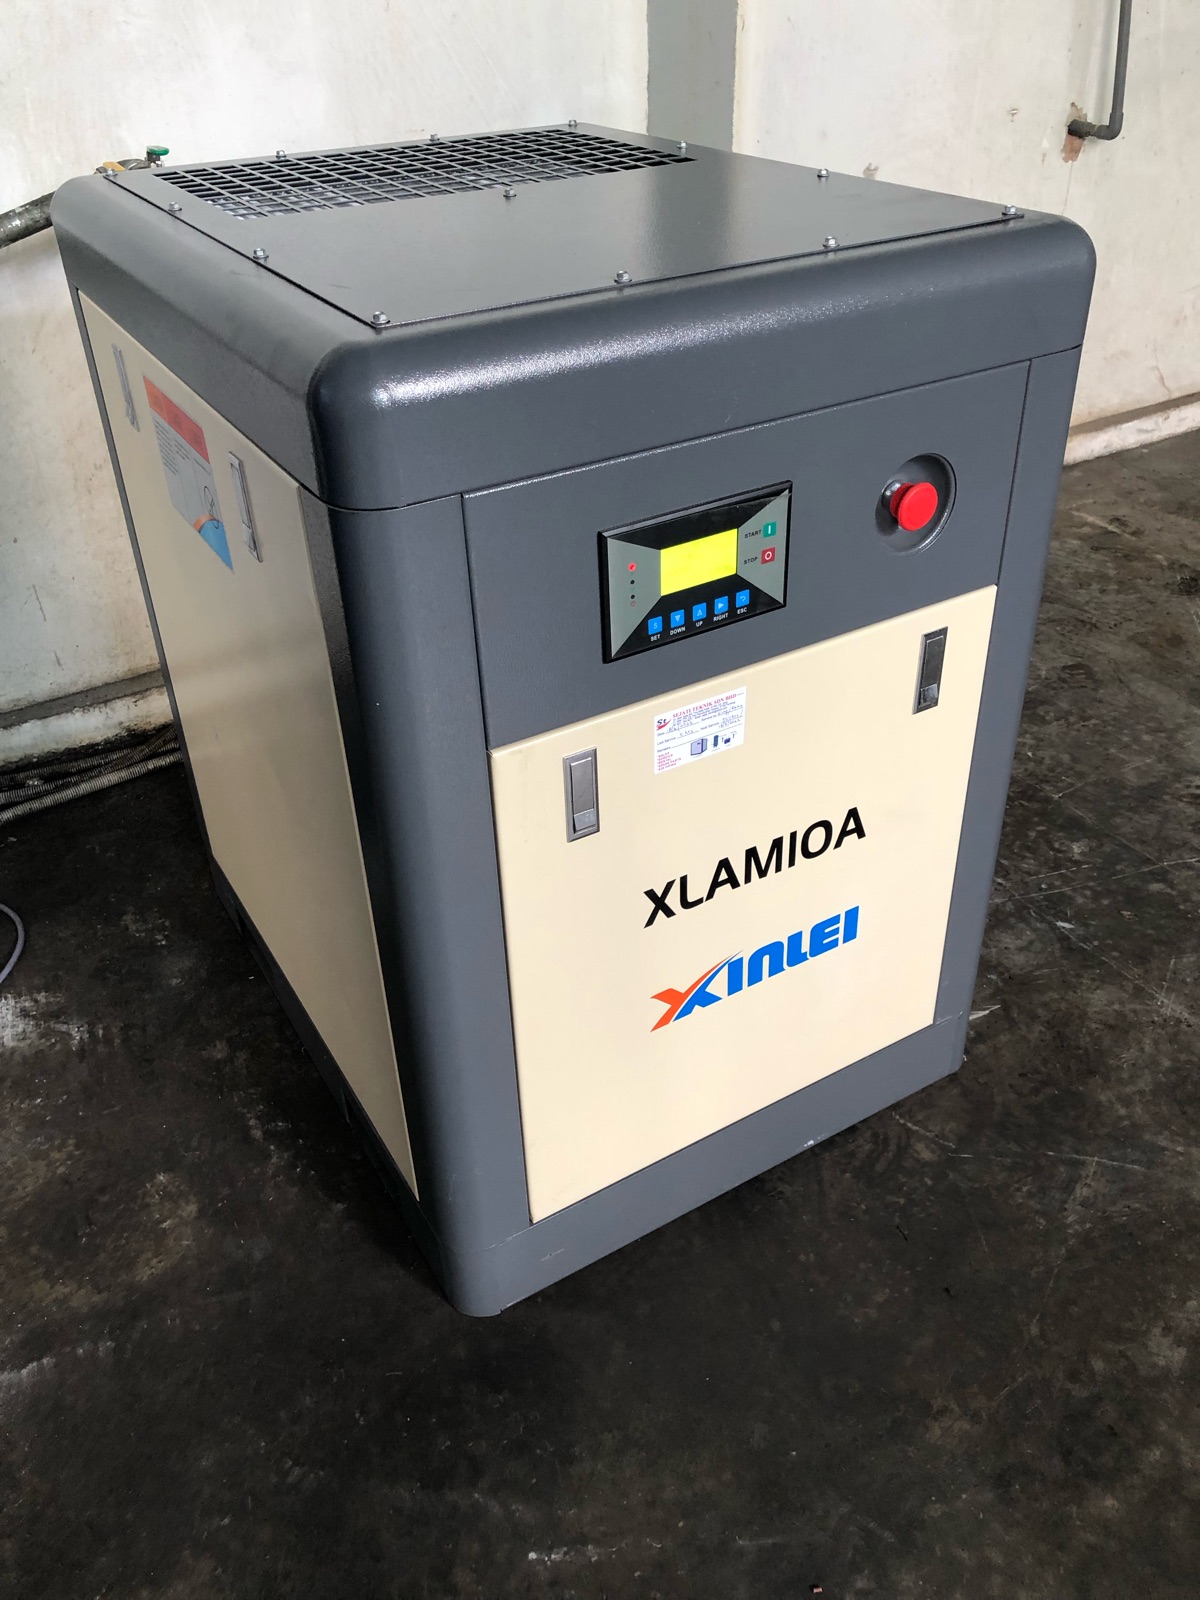 Xinlei Air Compressor XLAM10A 